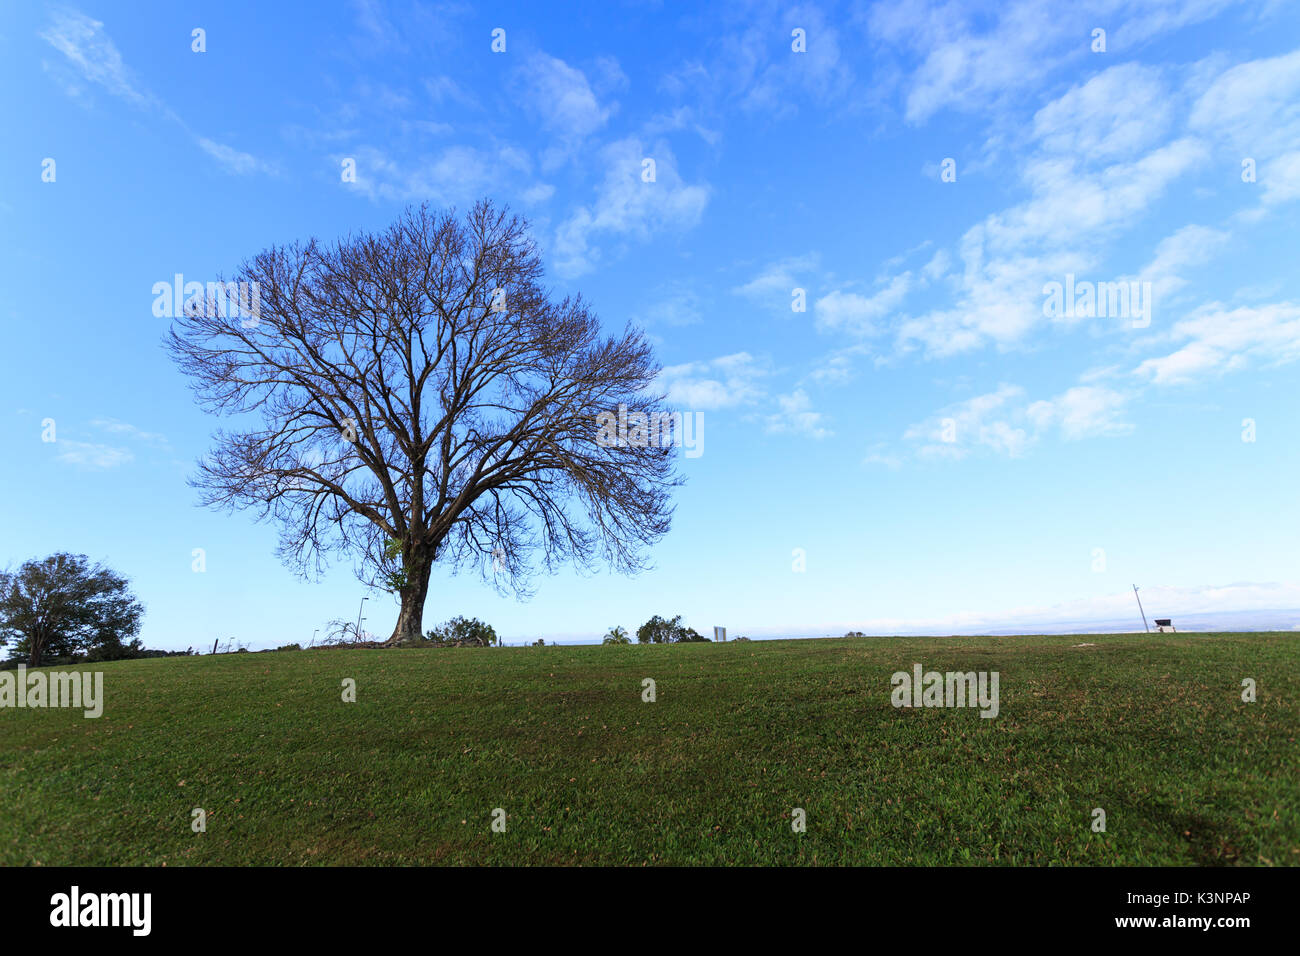 Friedlicher Hintergrund der Silhouette eines großen Baumes ohne Blätter auf einem grünen Hügel vor blauem Himmel Stockfoto